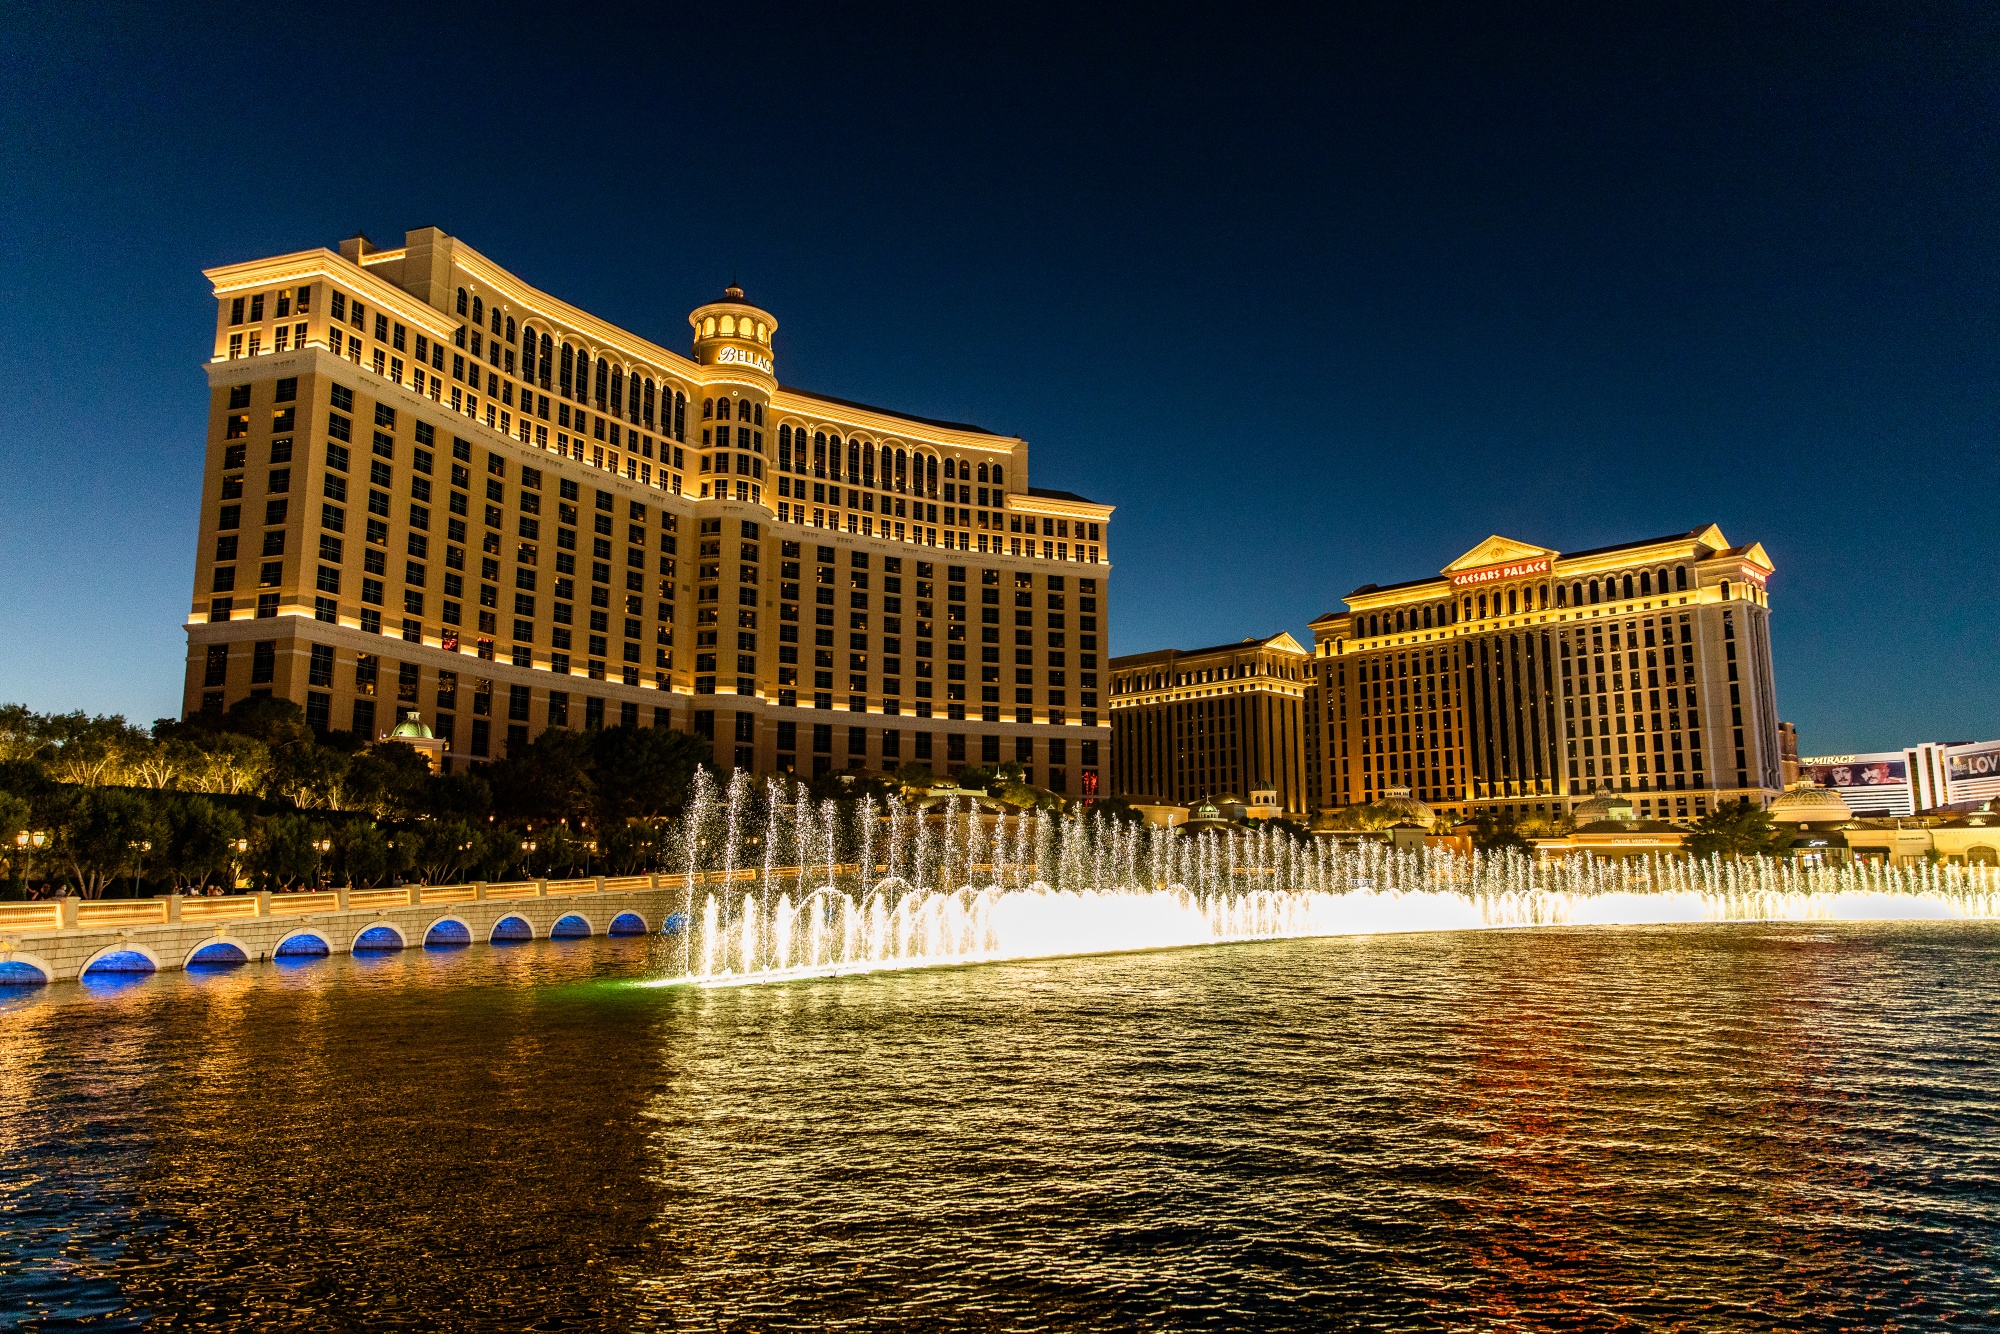 Marriott to open new resort and casino in Las Vegas